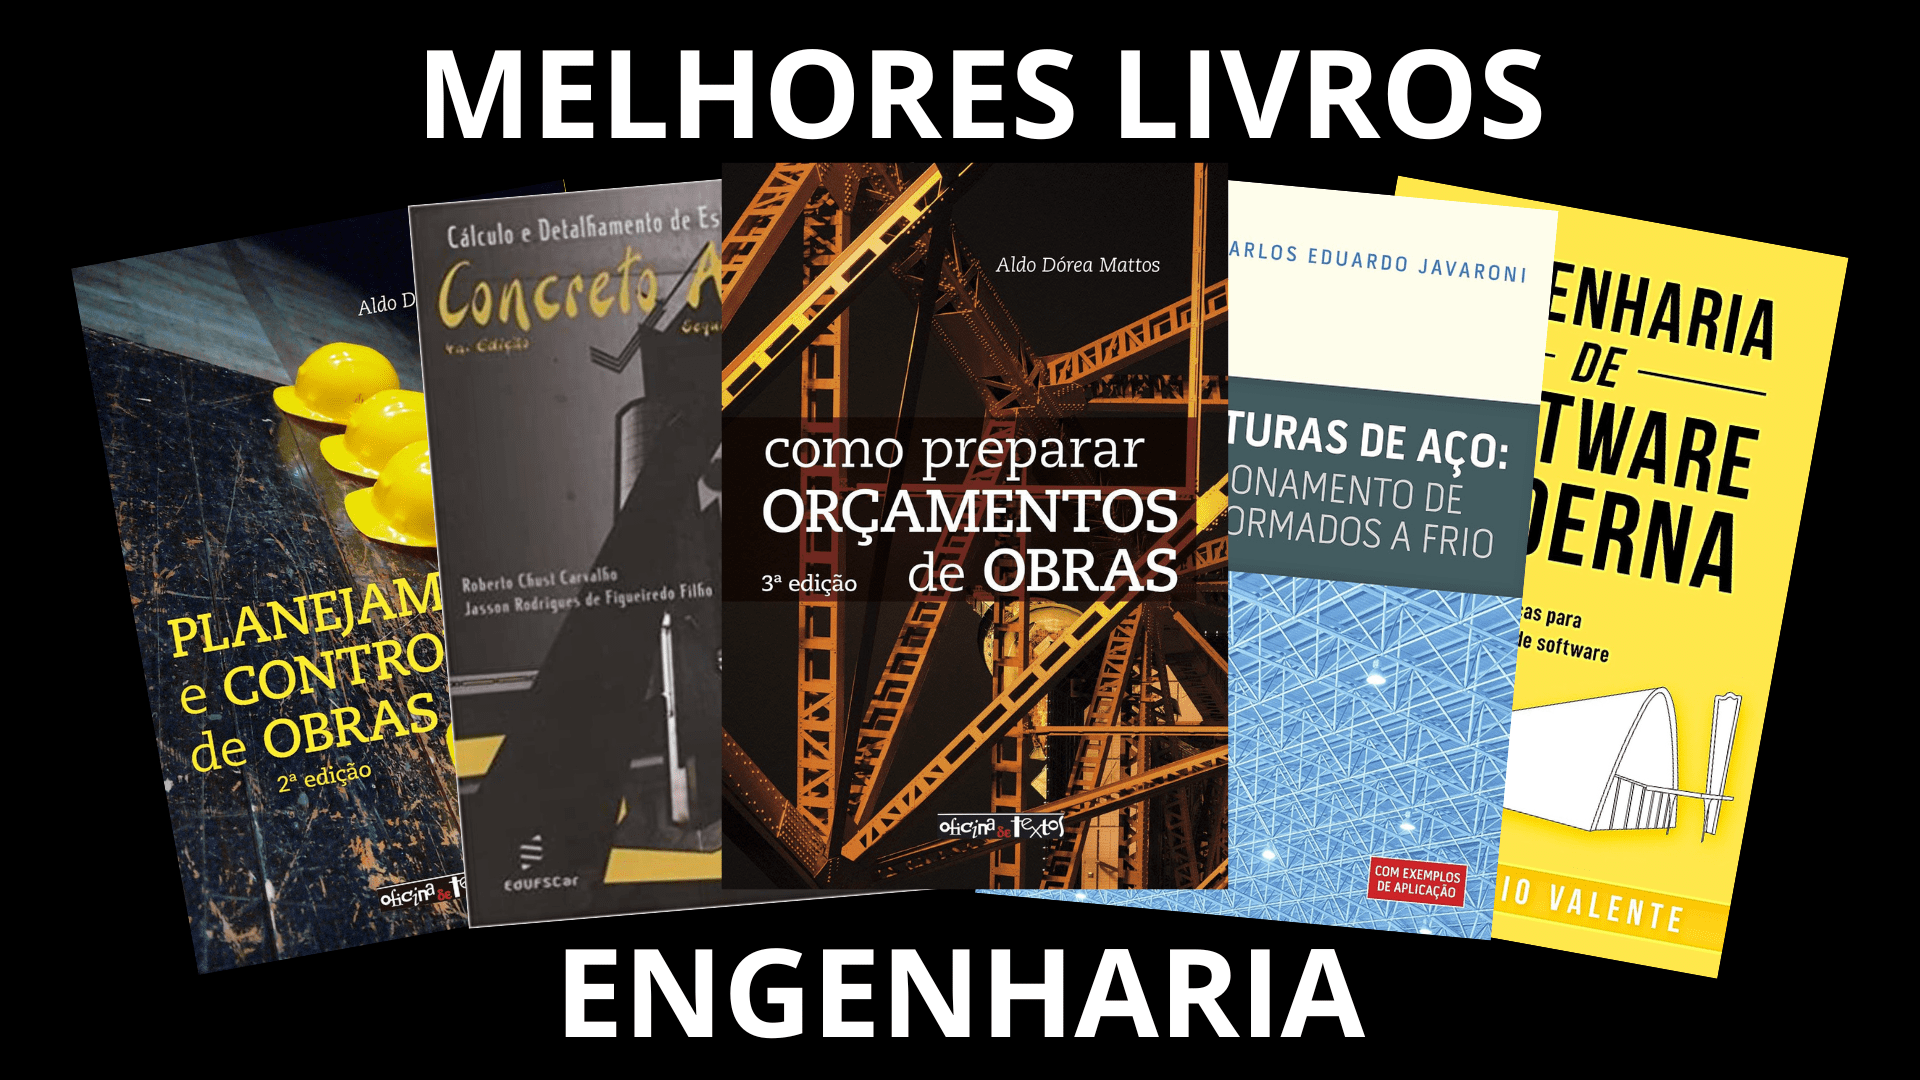 (c) Livrosdeengenharia.com.br